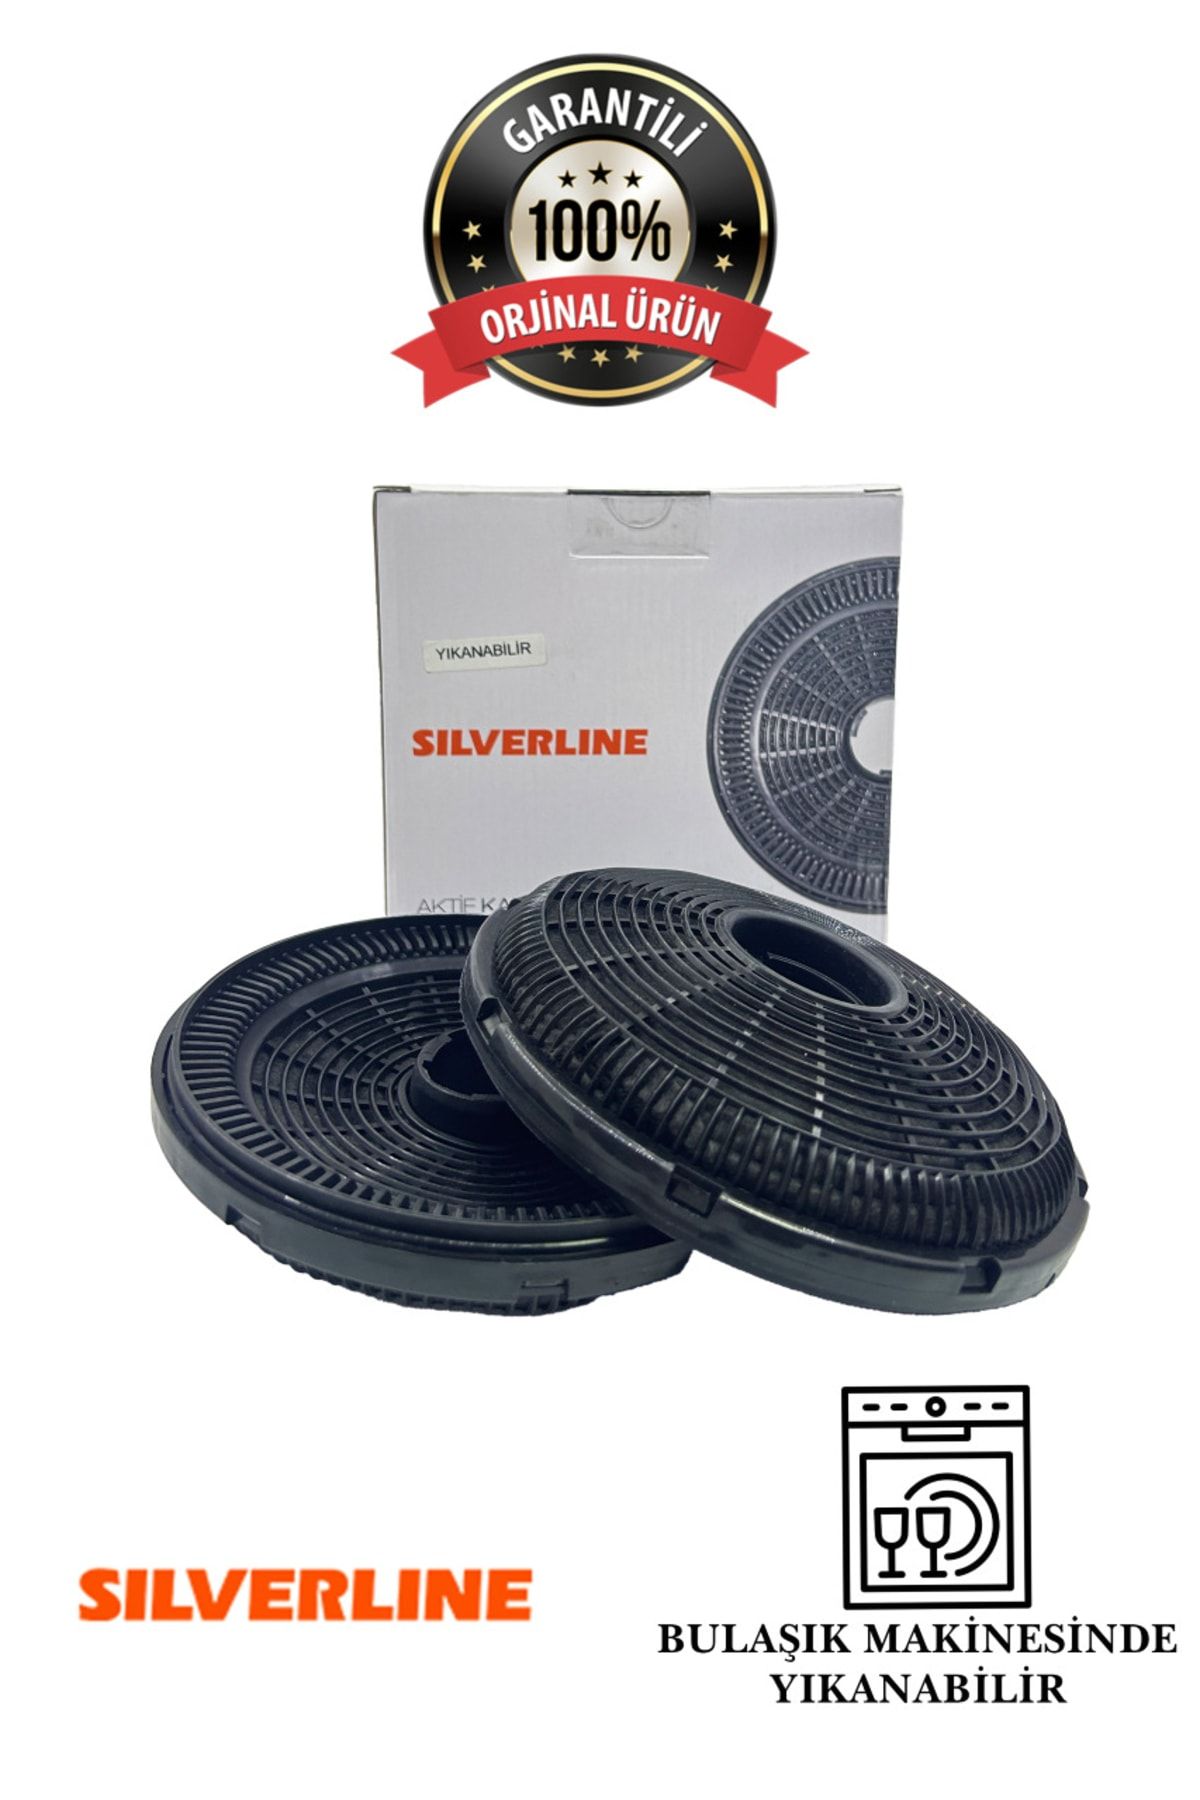 Silverline Esty Yıkanabilir Karbon Filtre ( Orijinal Ürün )